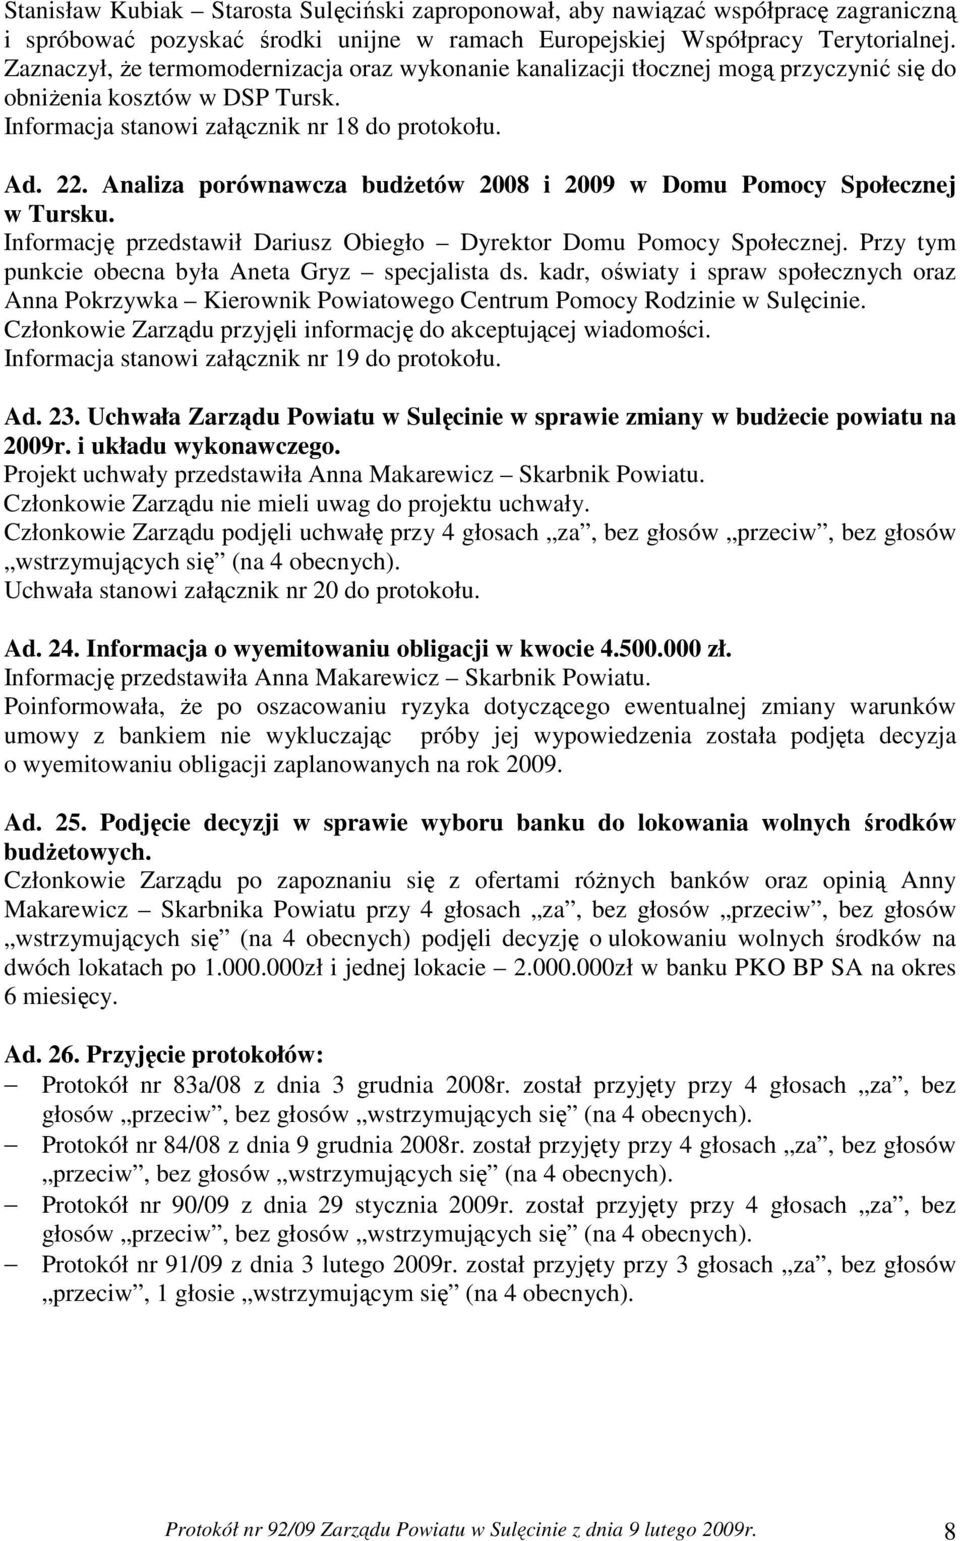 Analiza porównawcza budŝetów 2008 i 2009 w Domu Pomocy Społecznej w Tursku. Informację przedstawił Dariusz Obiegło Dyrektor Domu Pomocy Społecznej.